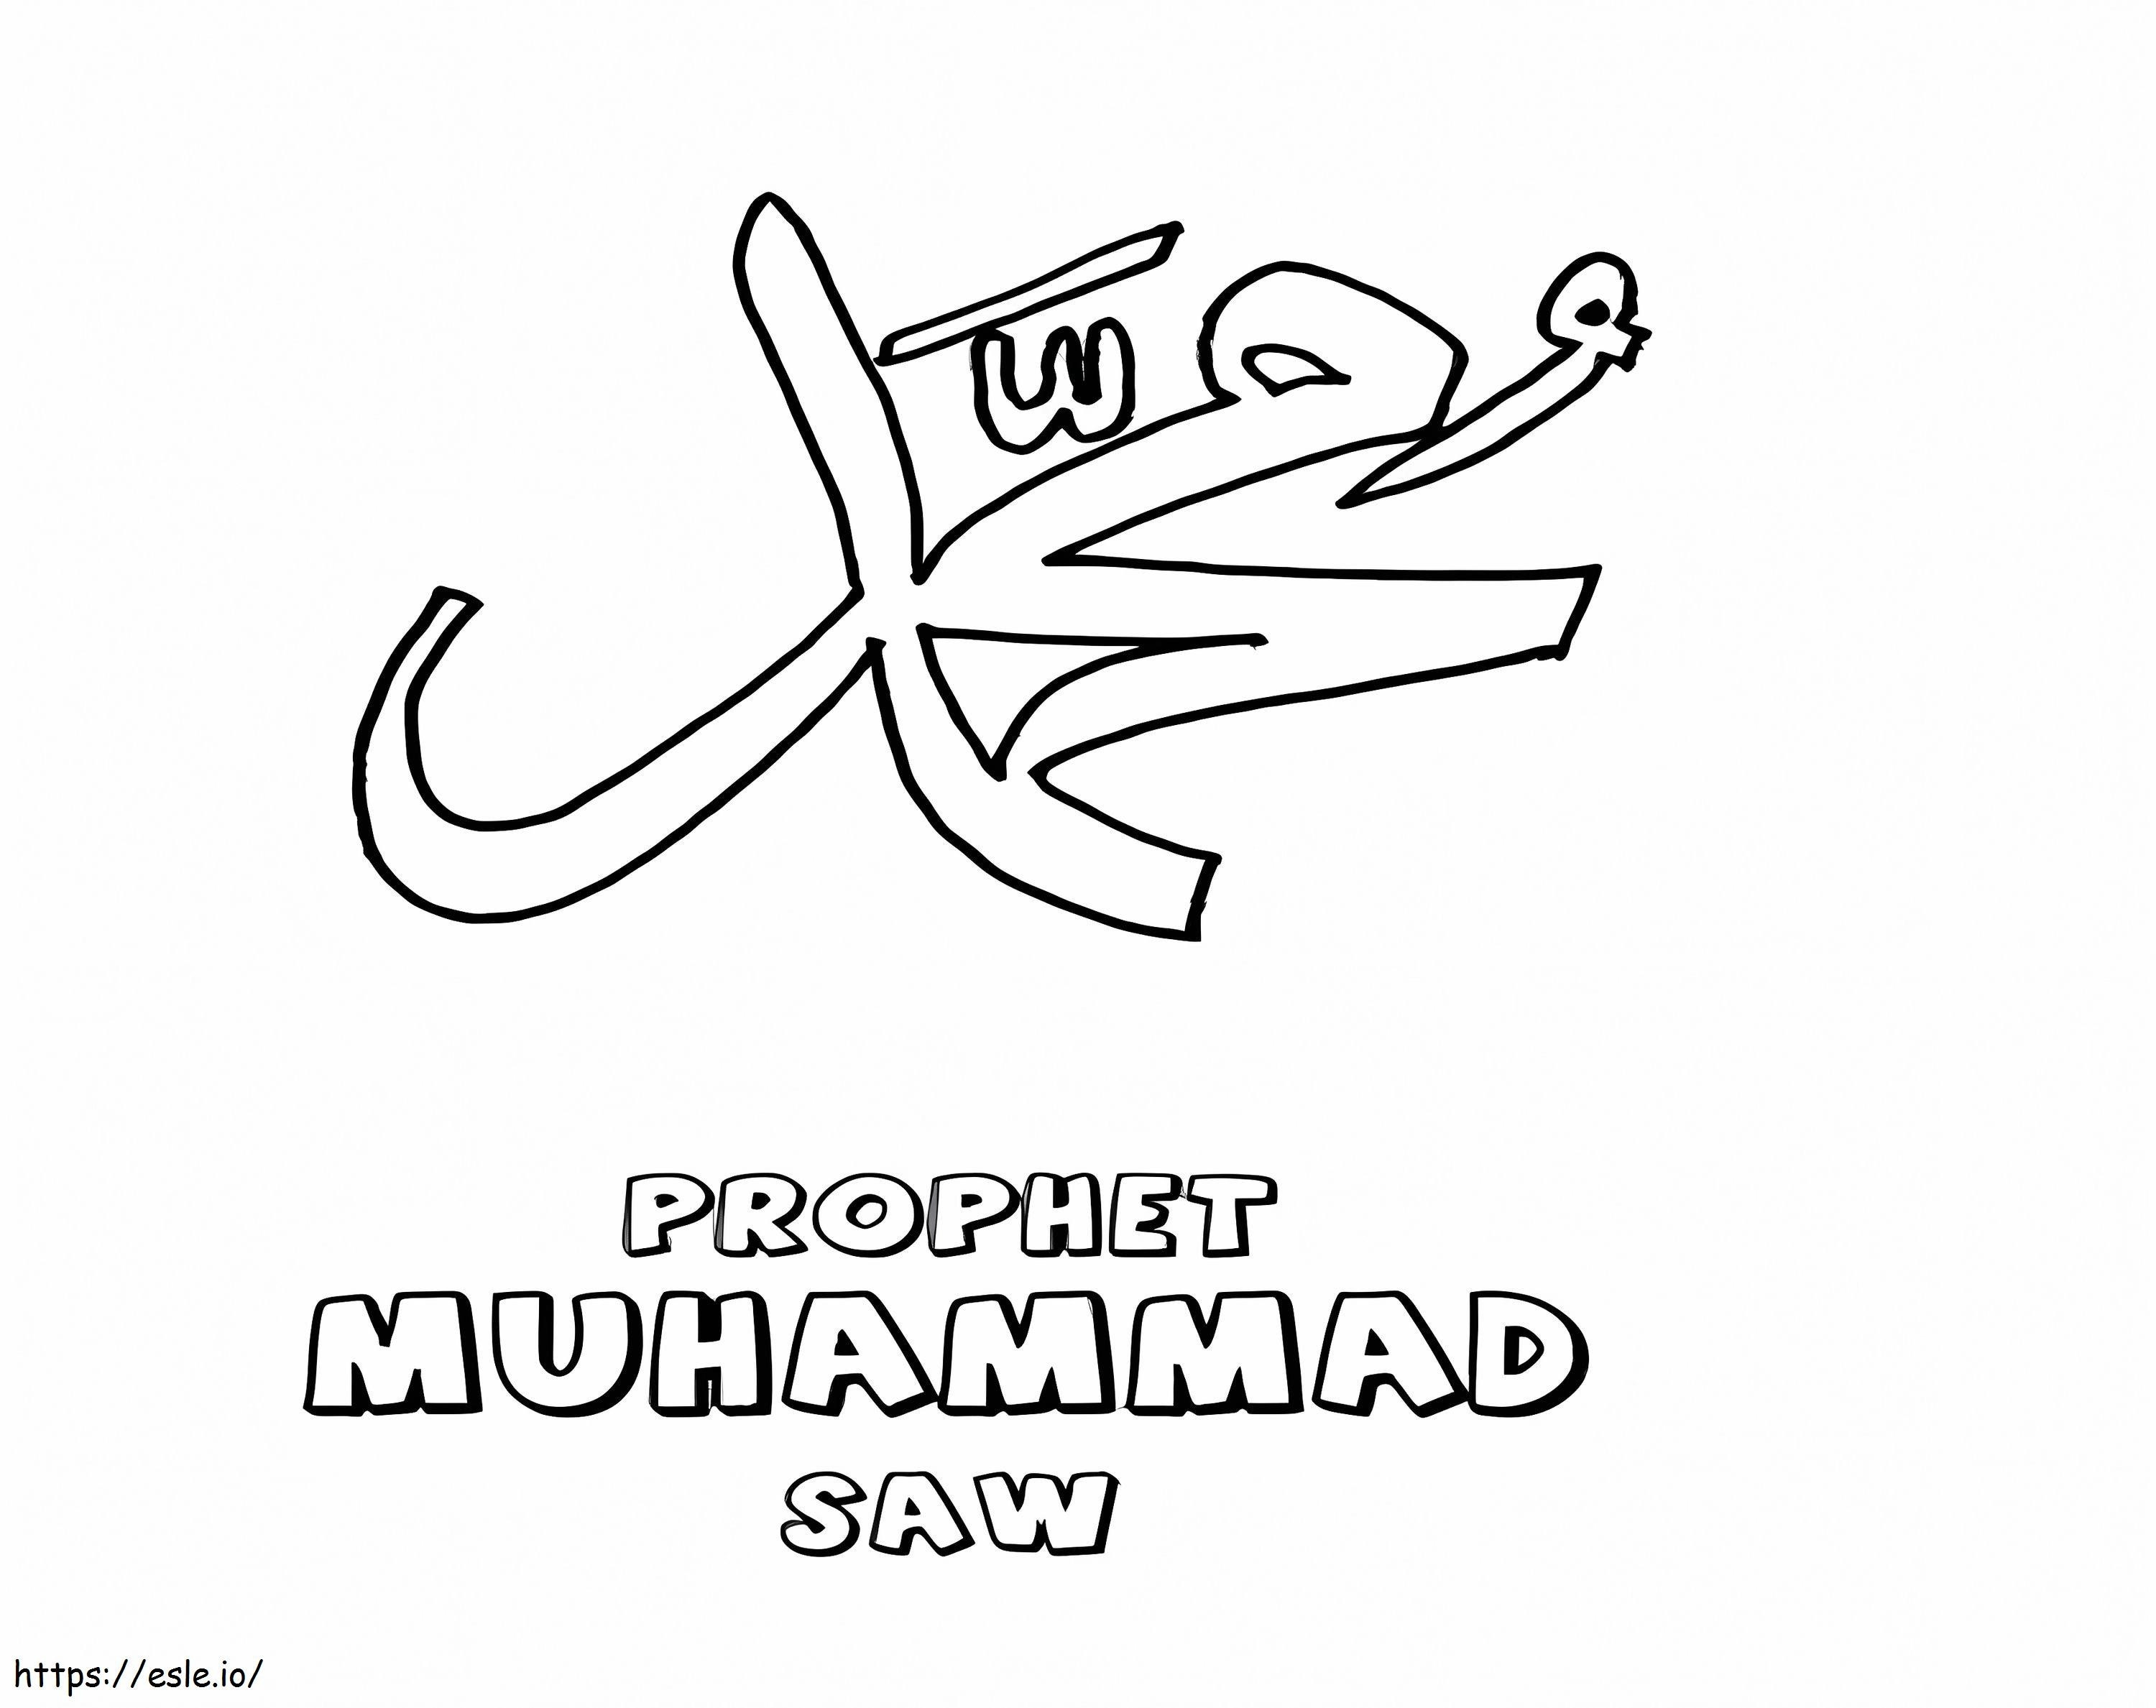 Profeta Muhammad Saw da colorare